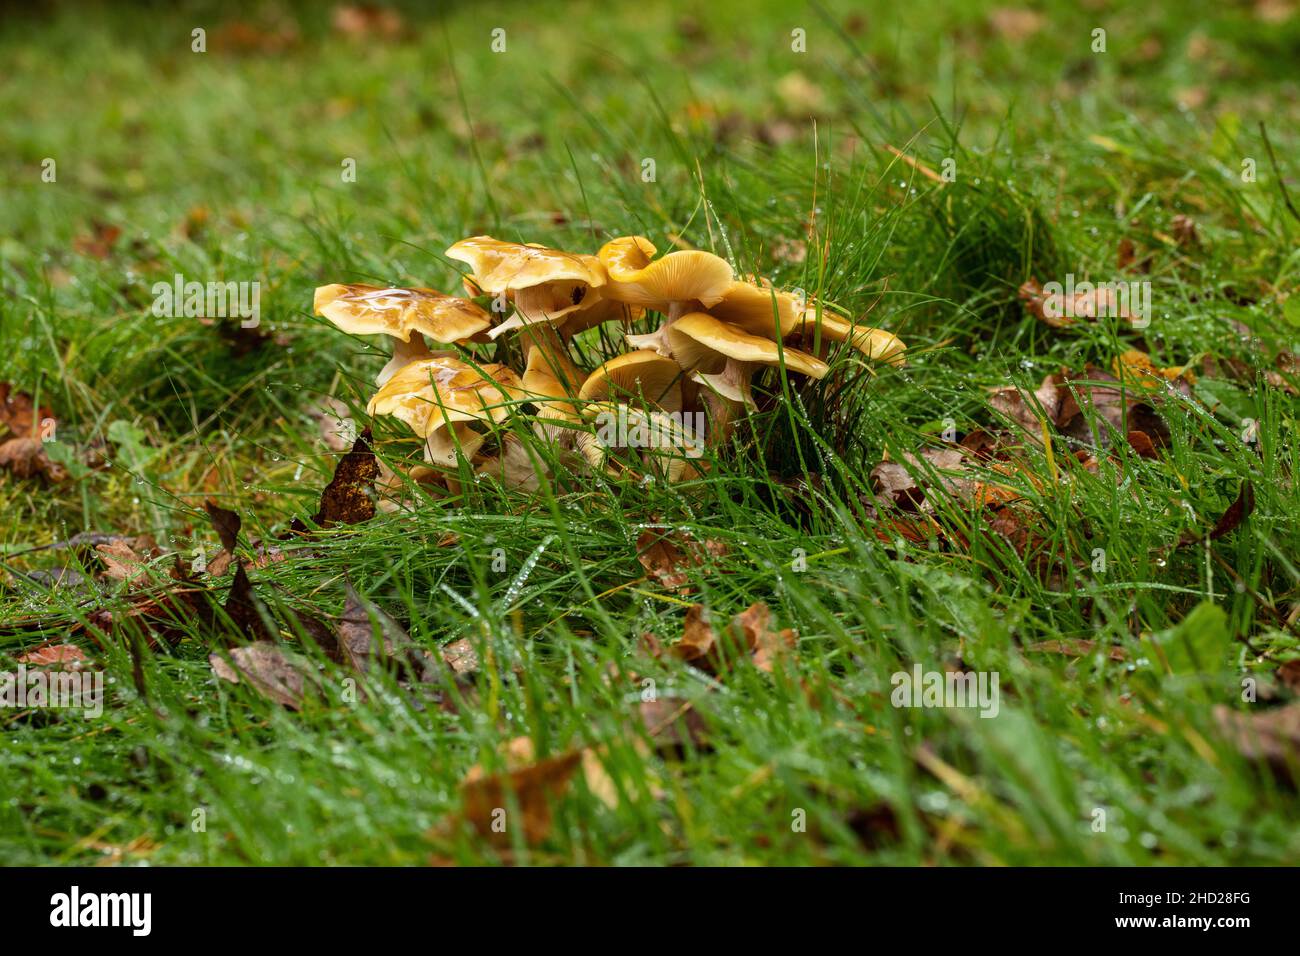 Une souche de champignons sauvages humides trouvés dans un champ de Wiltshire en novembre après plusieurs jours de pluie, Wiltshire, Angleterre, Royaume-Uni Banque D'Images